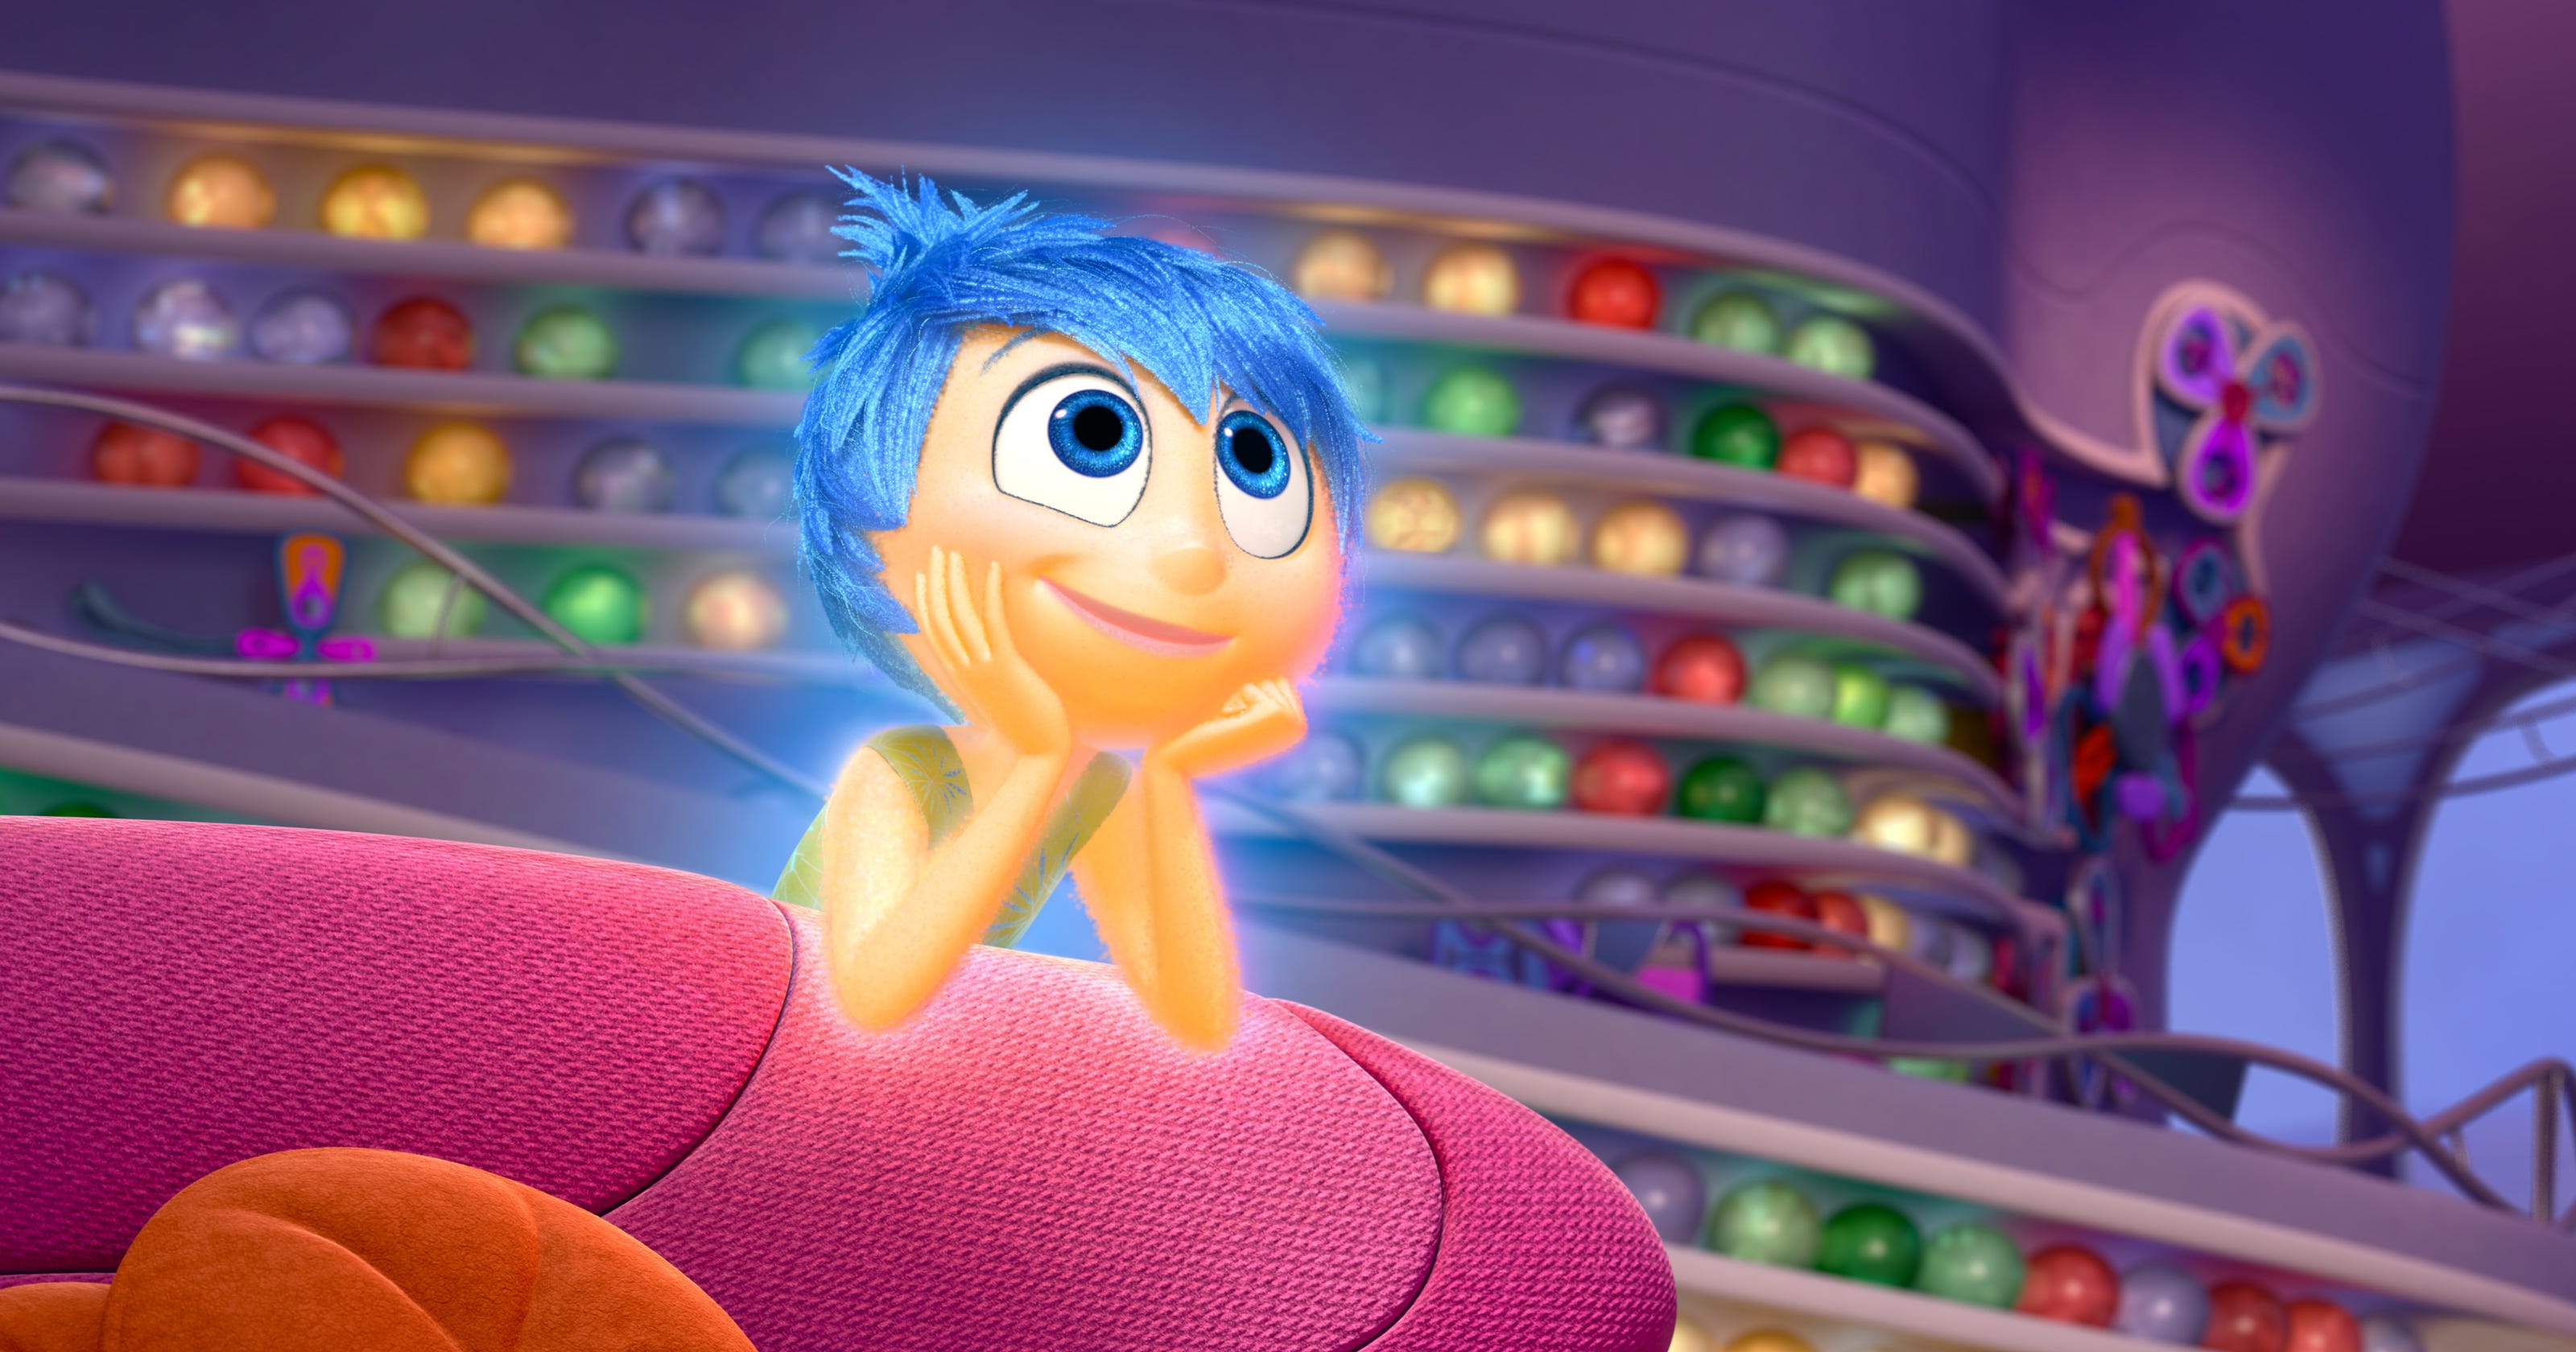 'Inside Out' brings joy back to Pixar